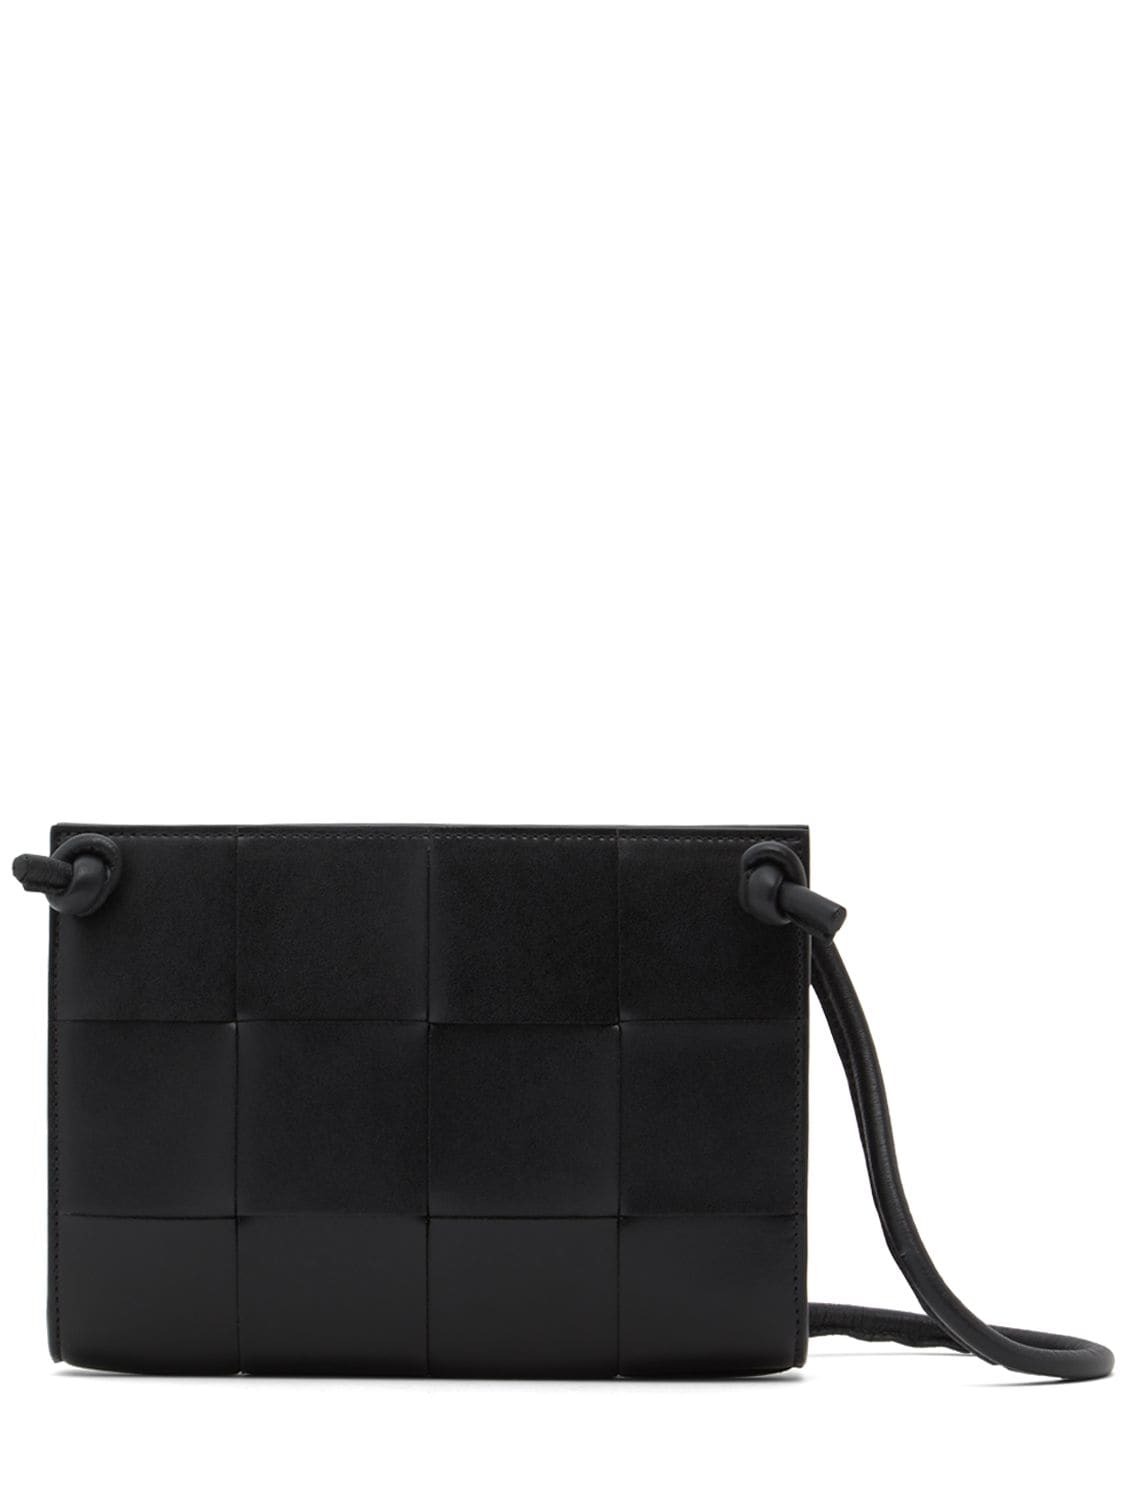 BOTTEGA VENETA Mini Cassette Leather Crossbody Bag in black